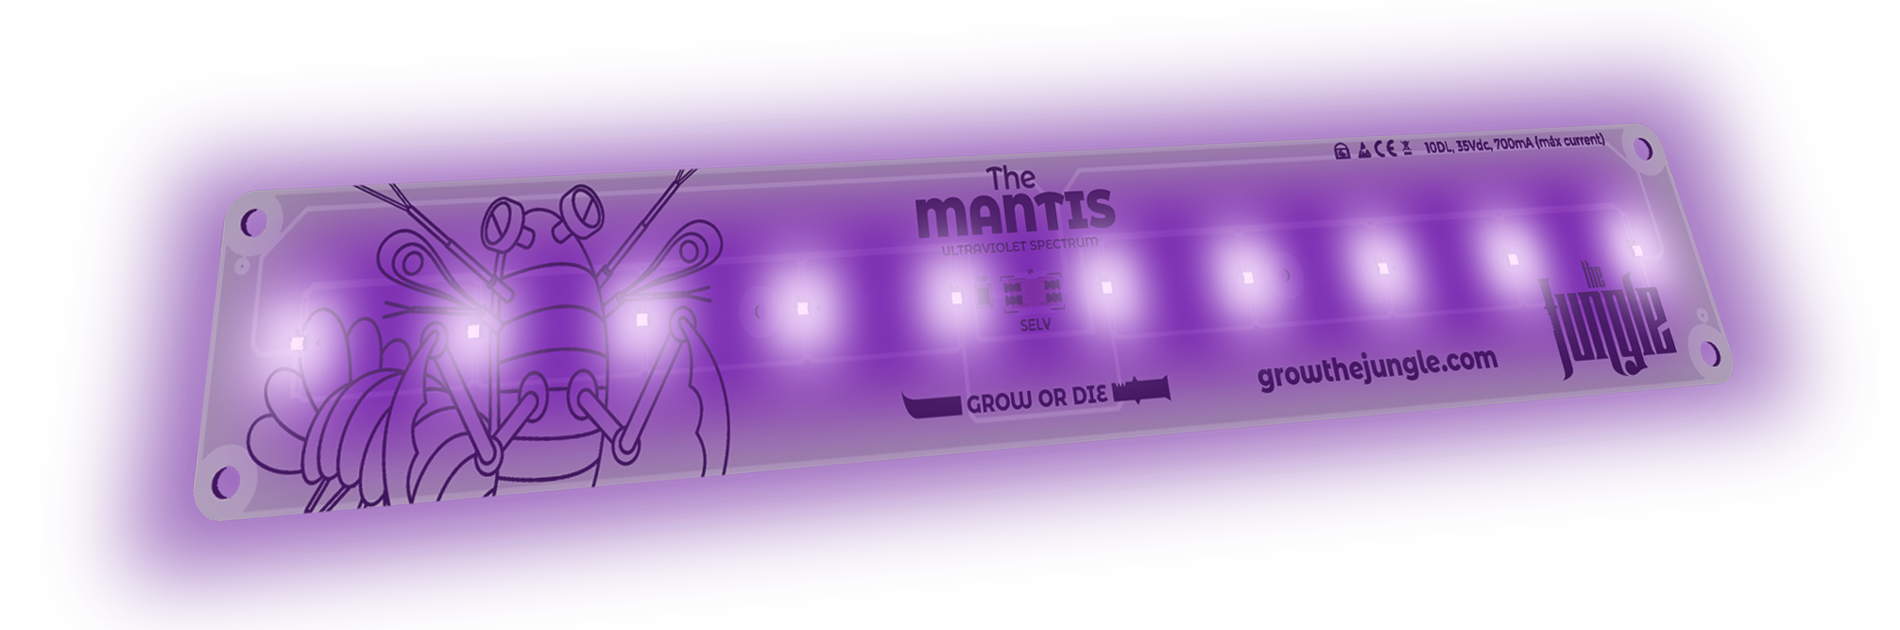 the mantis luz led uv